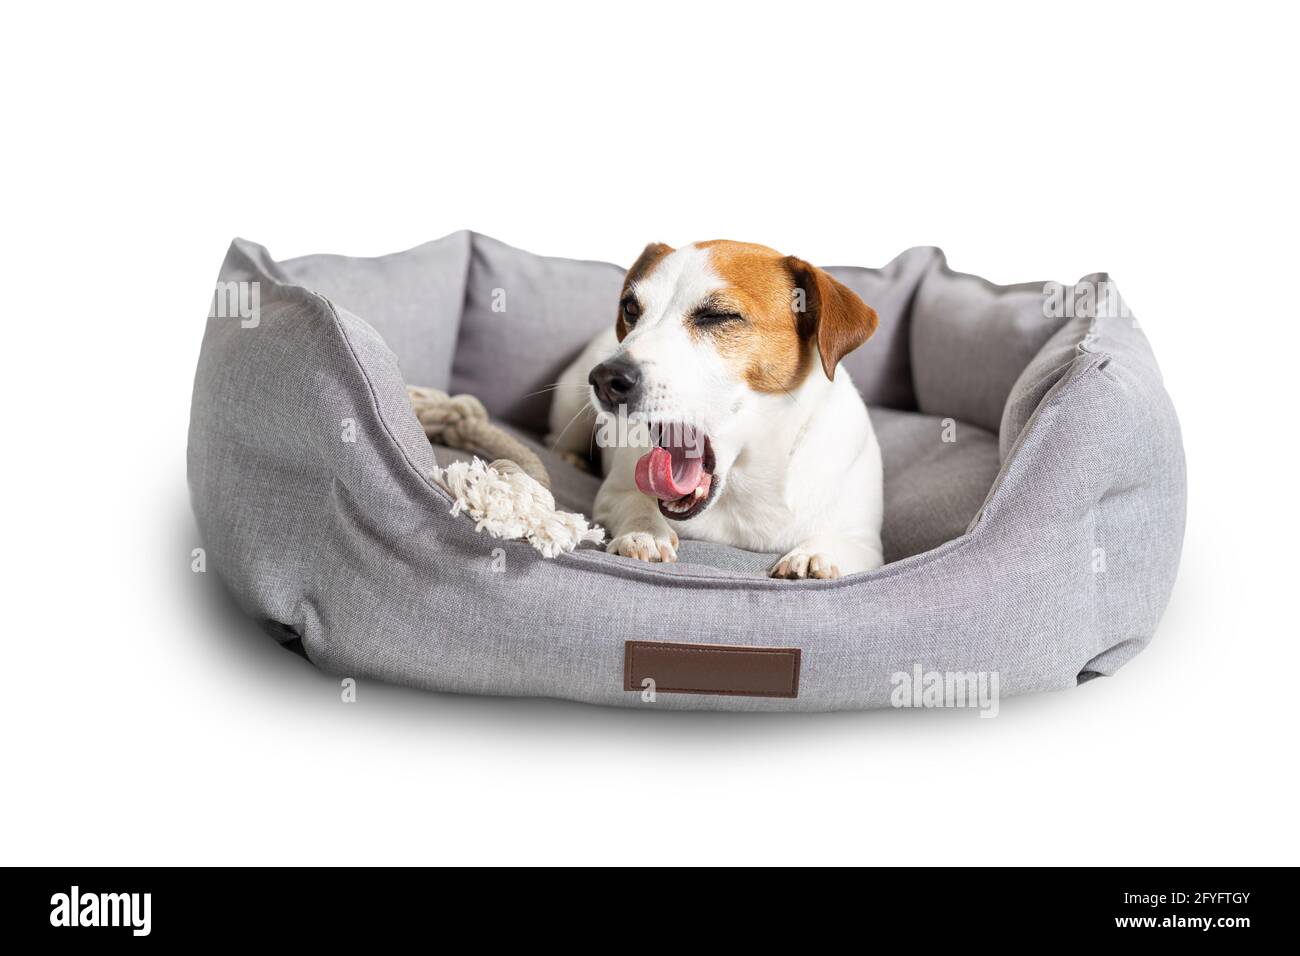 Un chien bâbord, Jack russell terrier allongé dans un lit d'animal de compagnie gris isolé sur blanc. Banque D'Images